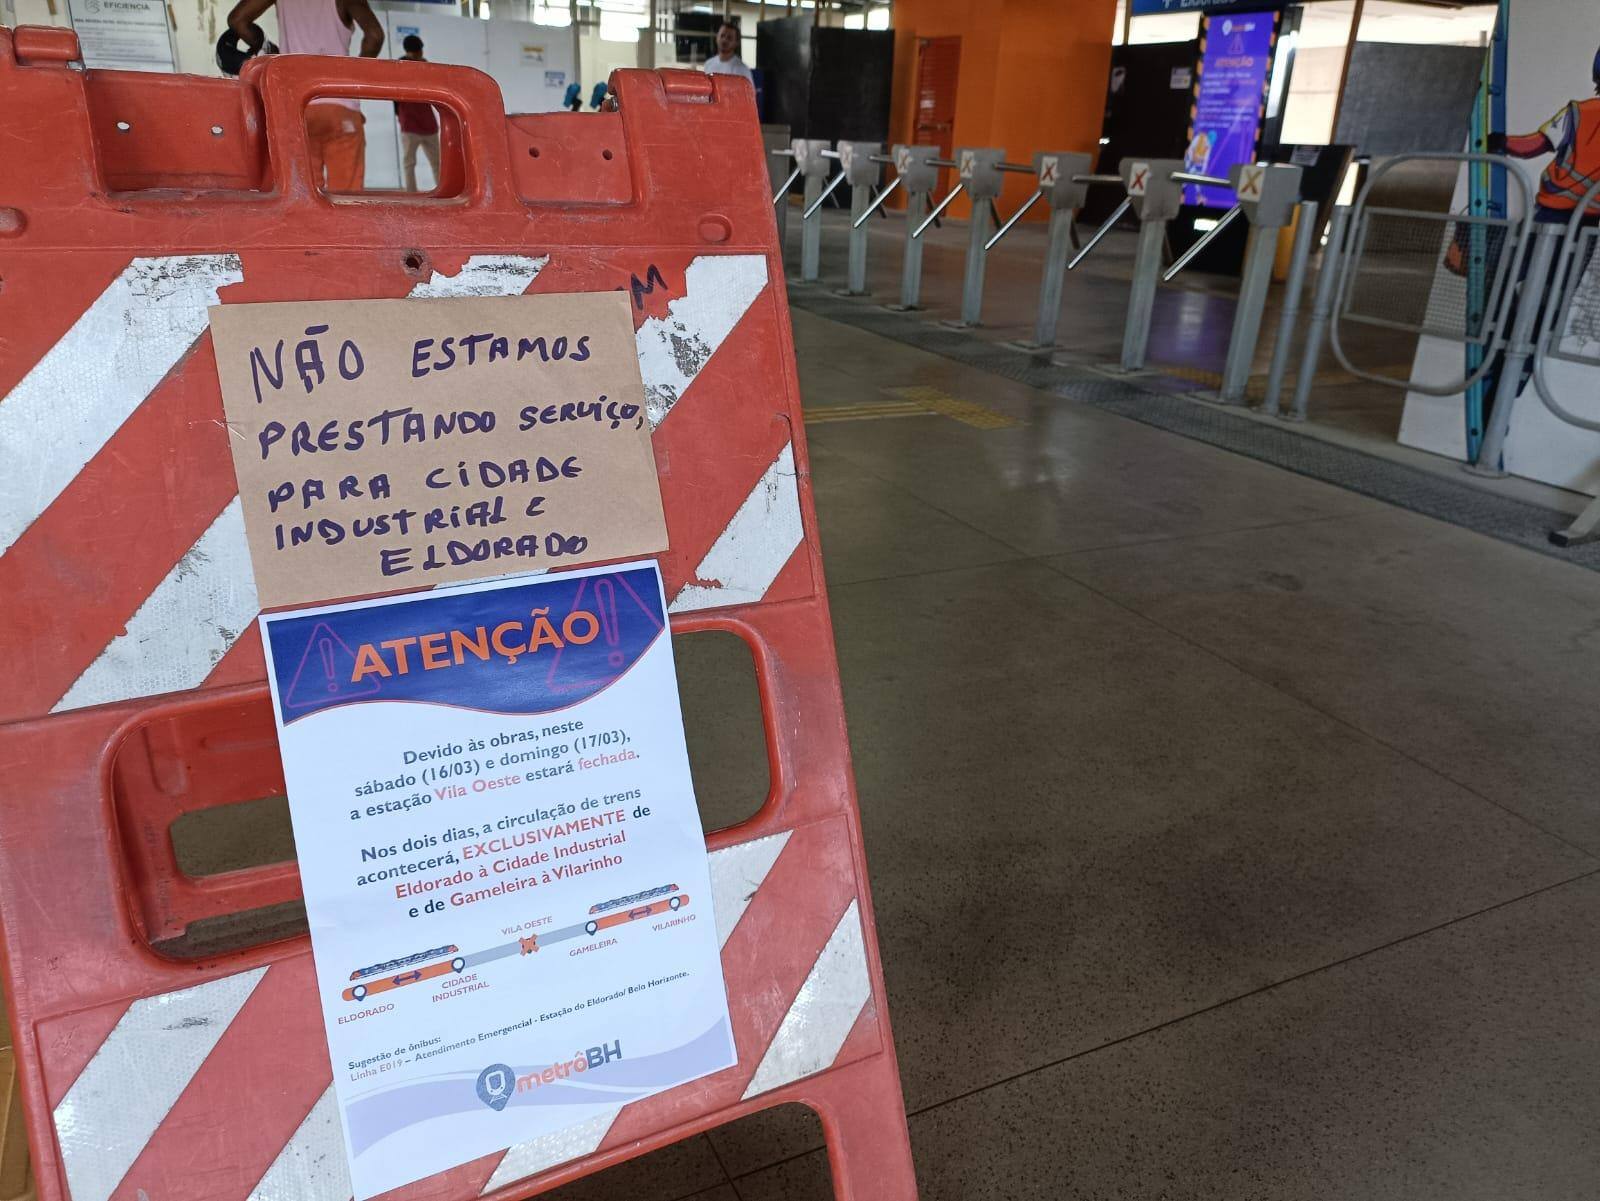 Placa na estação Gameleira informa sobre a obra na estação Vila Oeste, mas não traz informação sobre o valor do ônibus